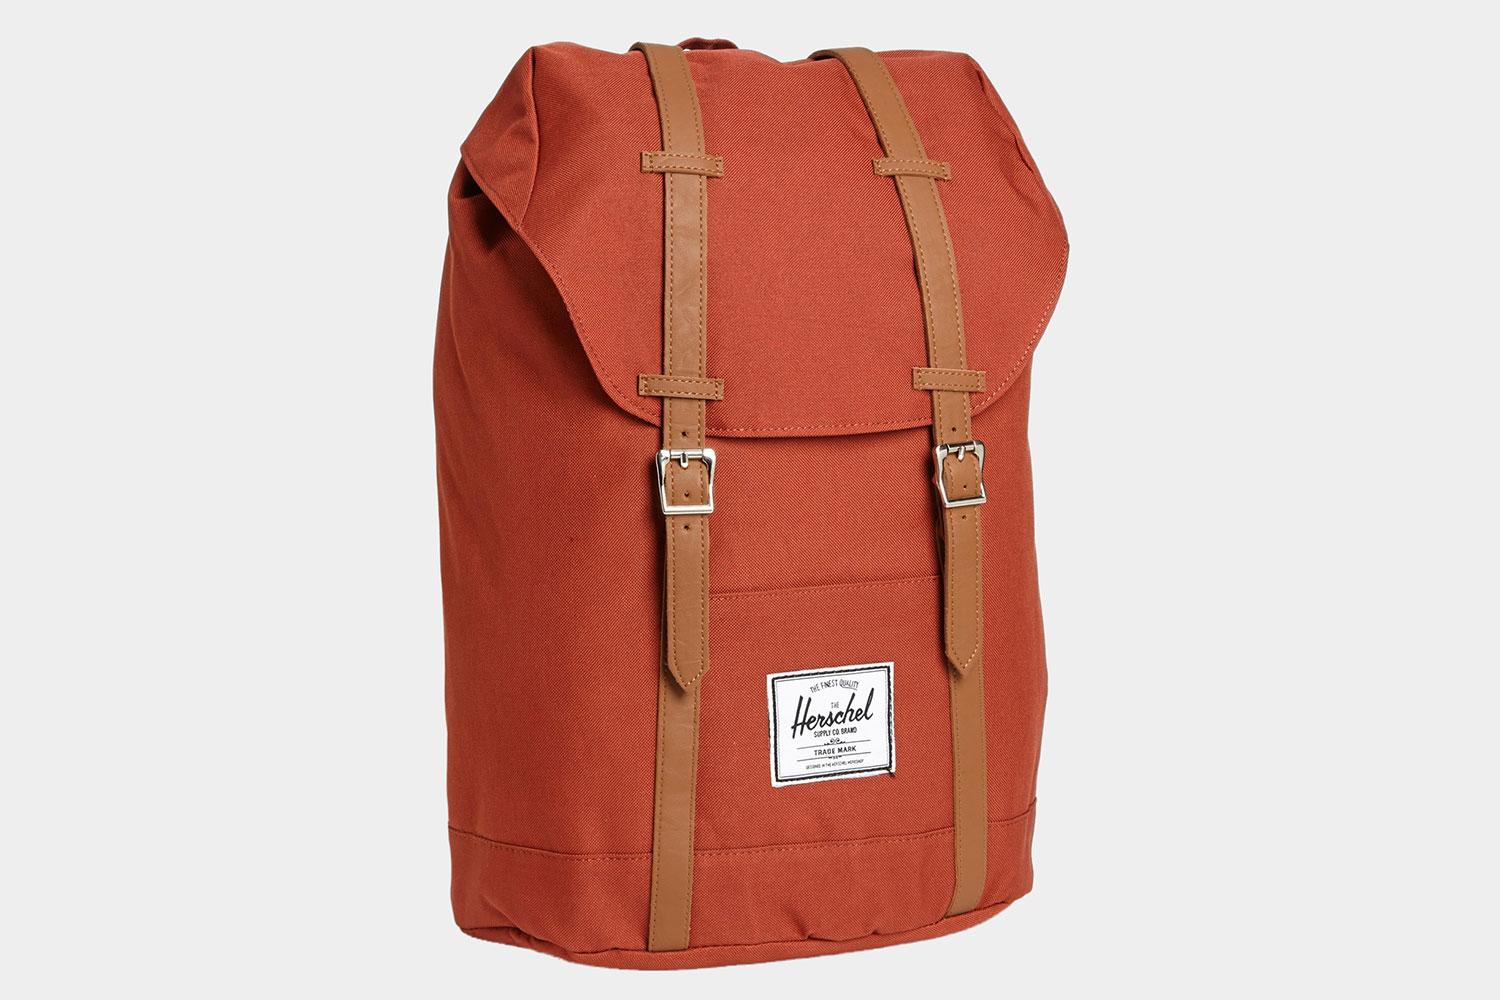 Herschel Supply Co Retreat backpack.